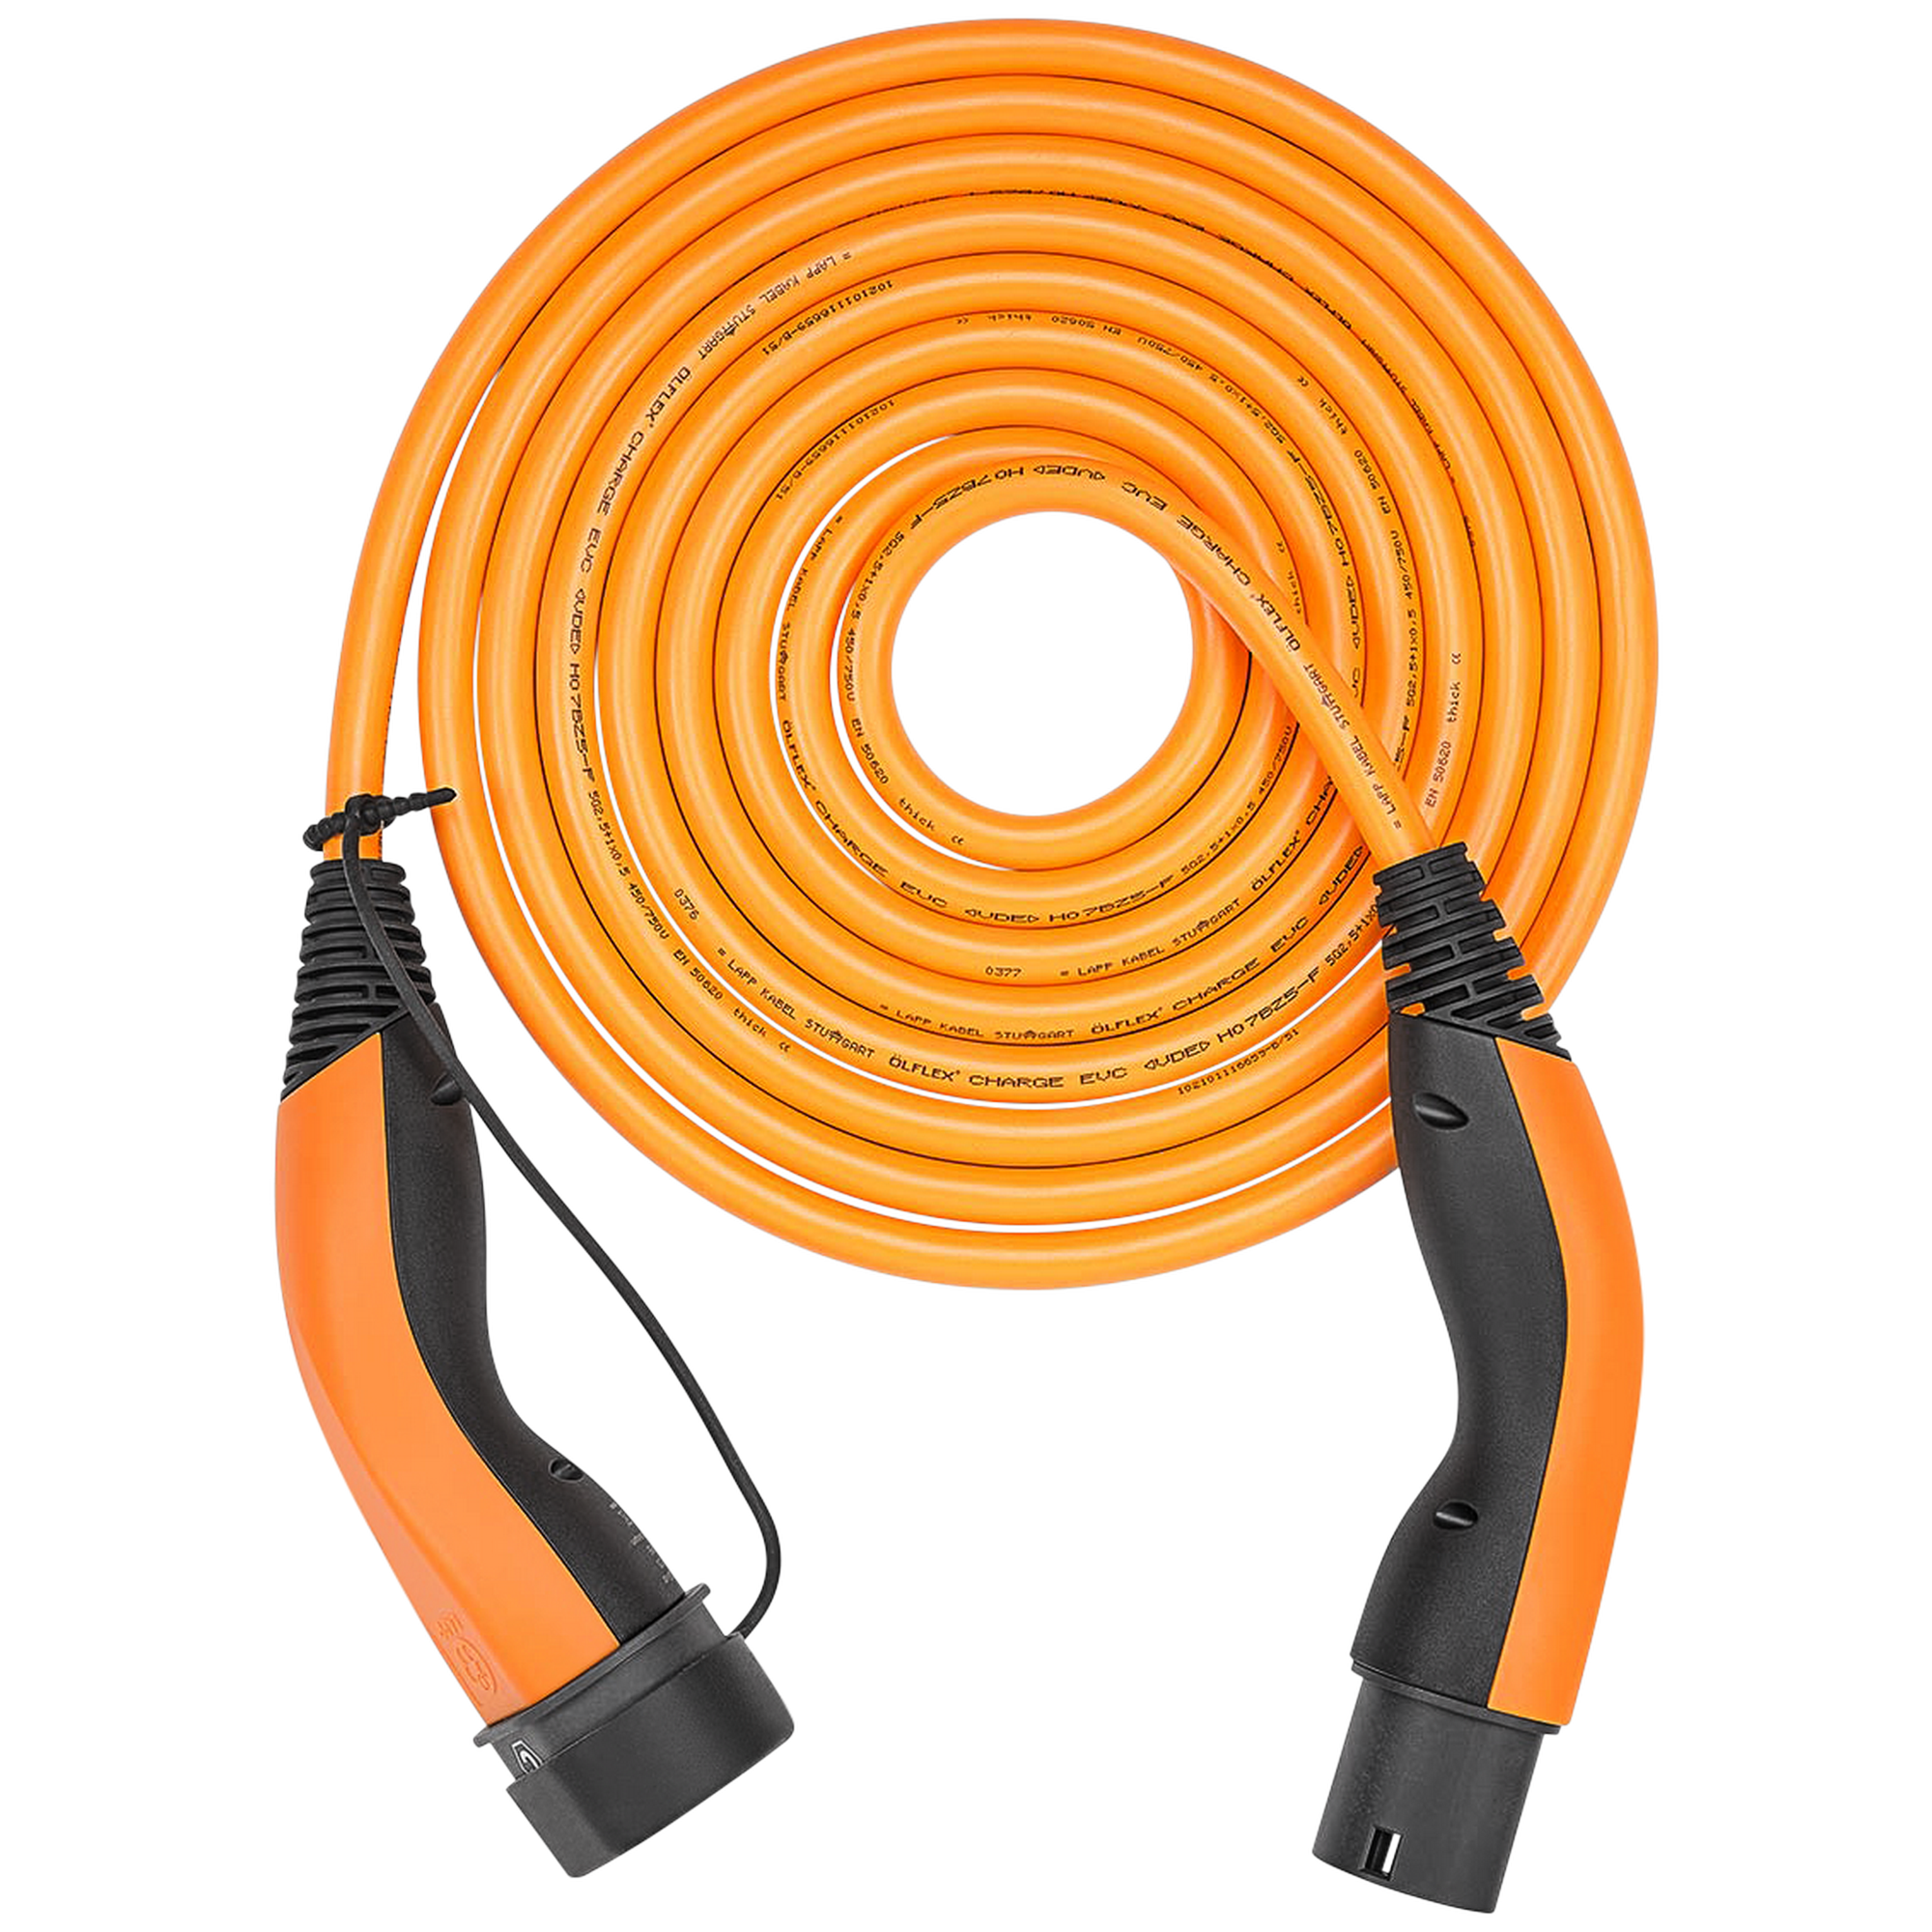 Komfort-Ladekabel 'HELIX' orange Typ 2, bis zu 22 kW, 5 m für Elektro- und Hybridfahrzeuge + product picture